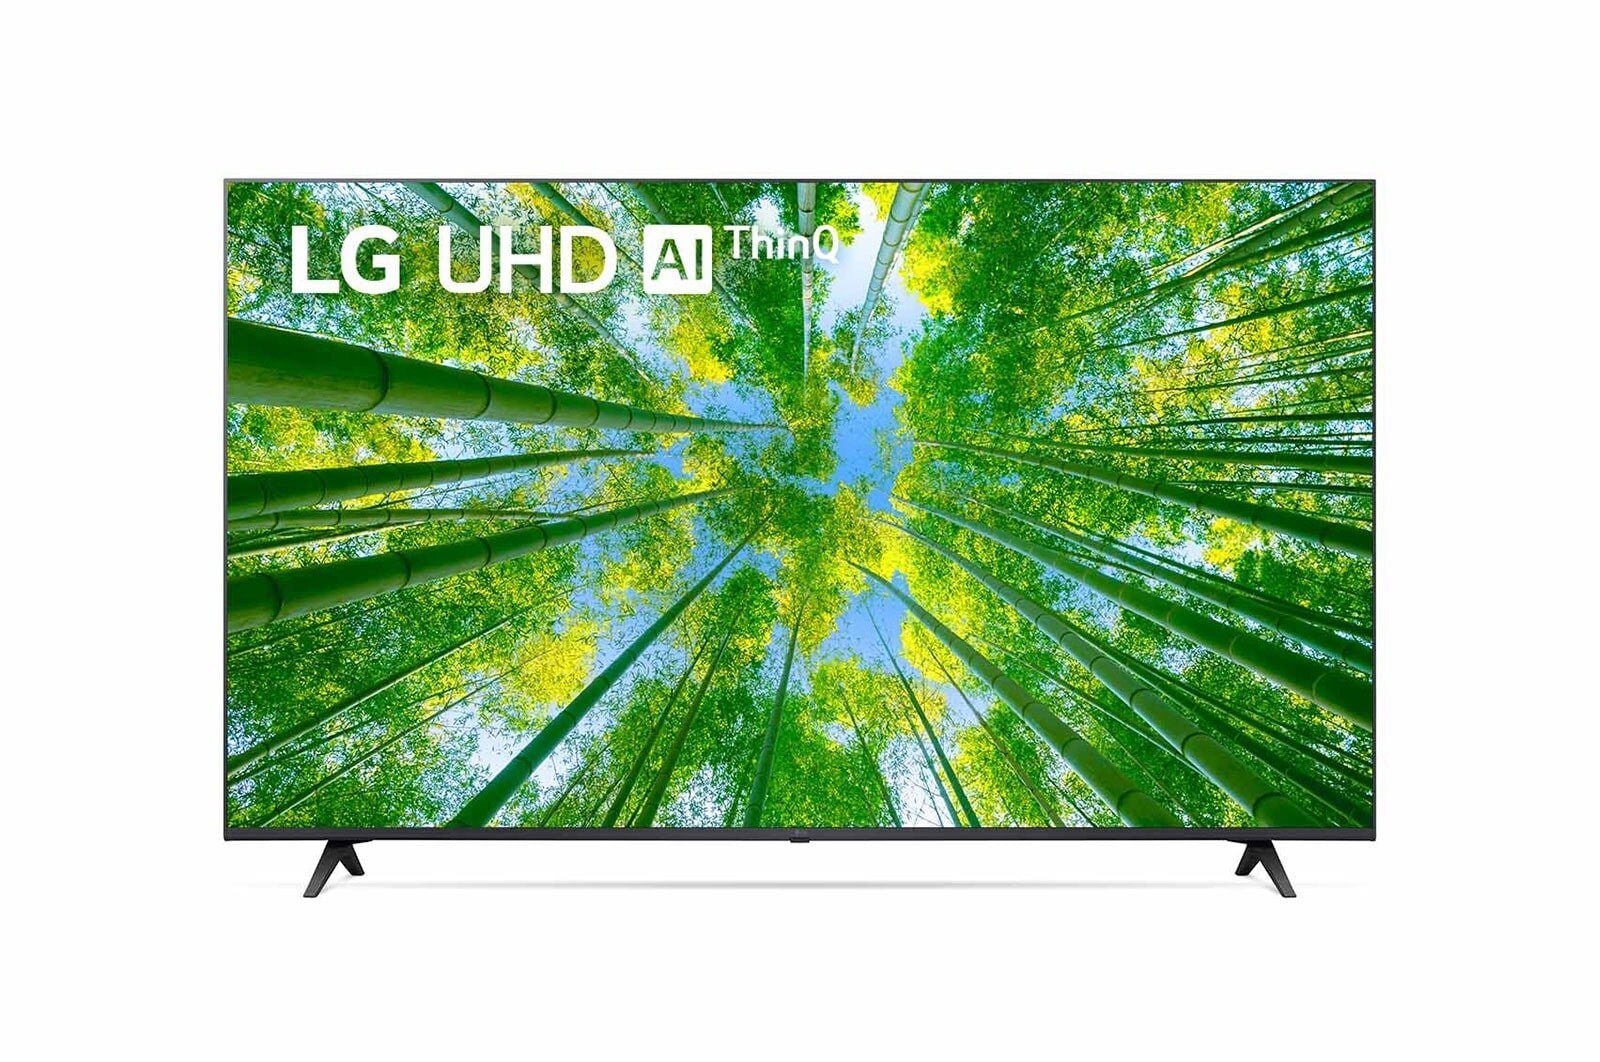 LG UHD TV UQ80 50 inch 4K Smart TV | Magic Remote | Small TV | Ultra HD 4K resolution | AI ThinQ, 50UQ8050PSB